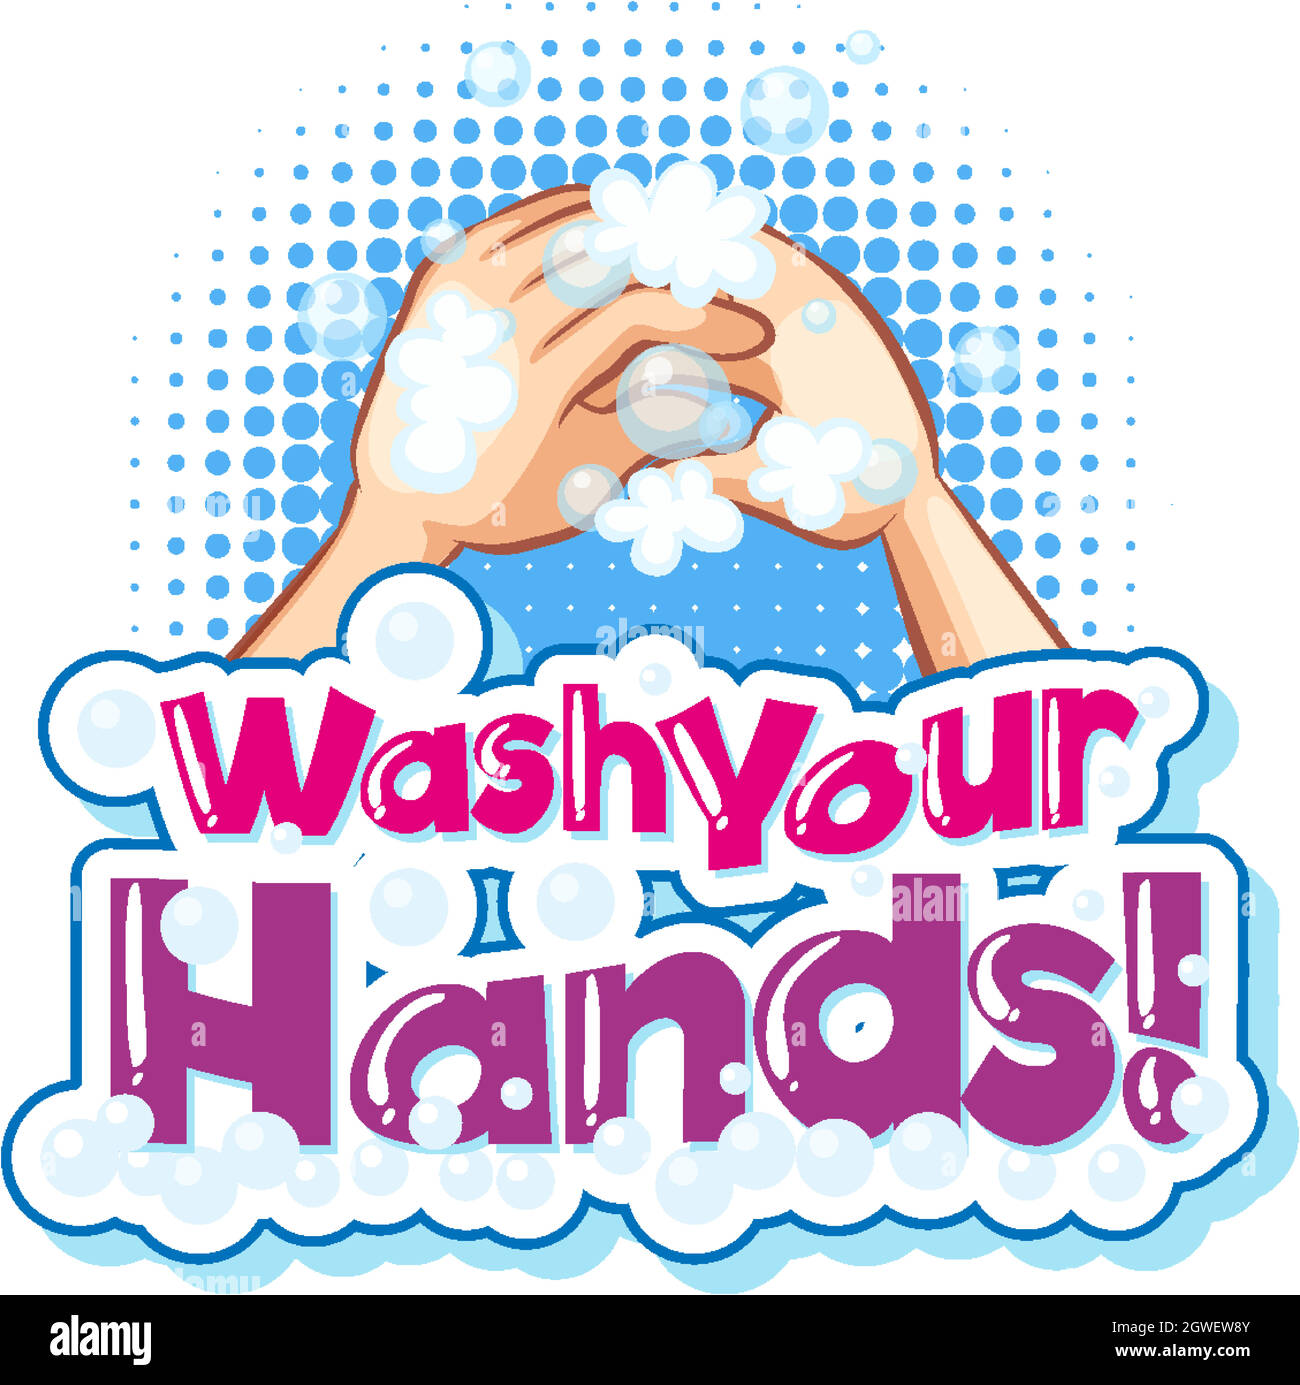 Textdesign zum Händewaschen mit ausgewaschenen menschlichen Händen Stock Vektor